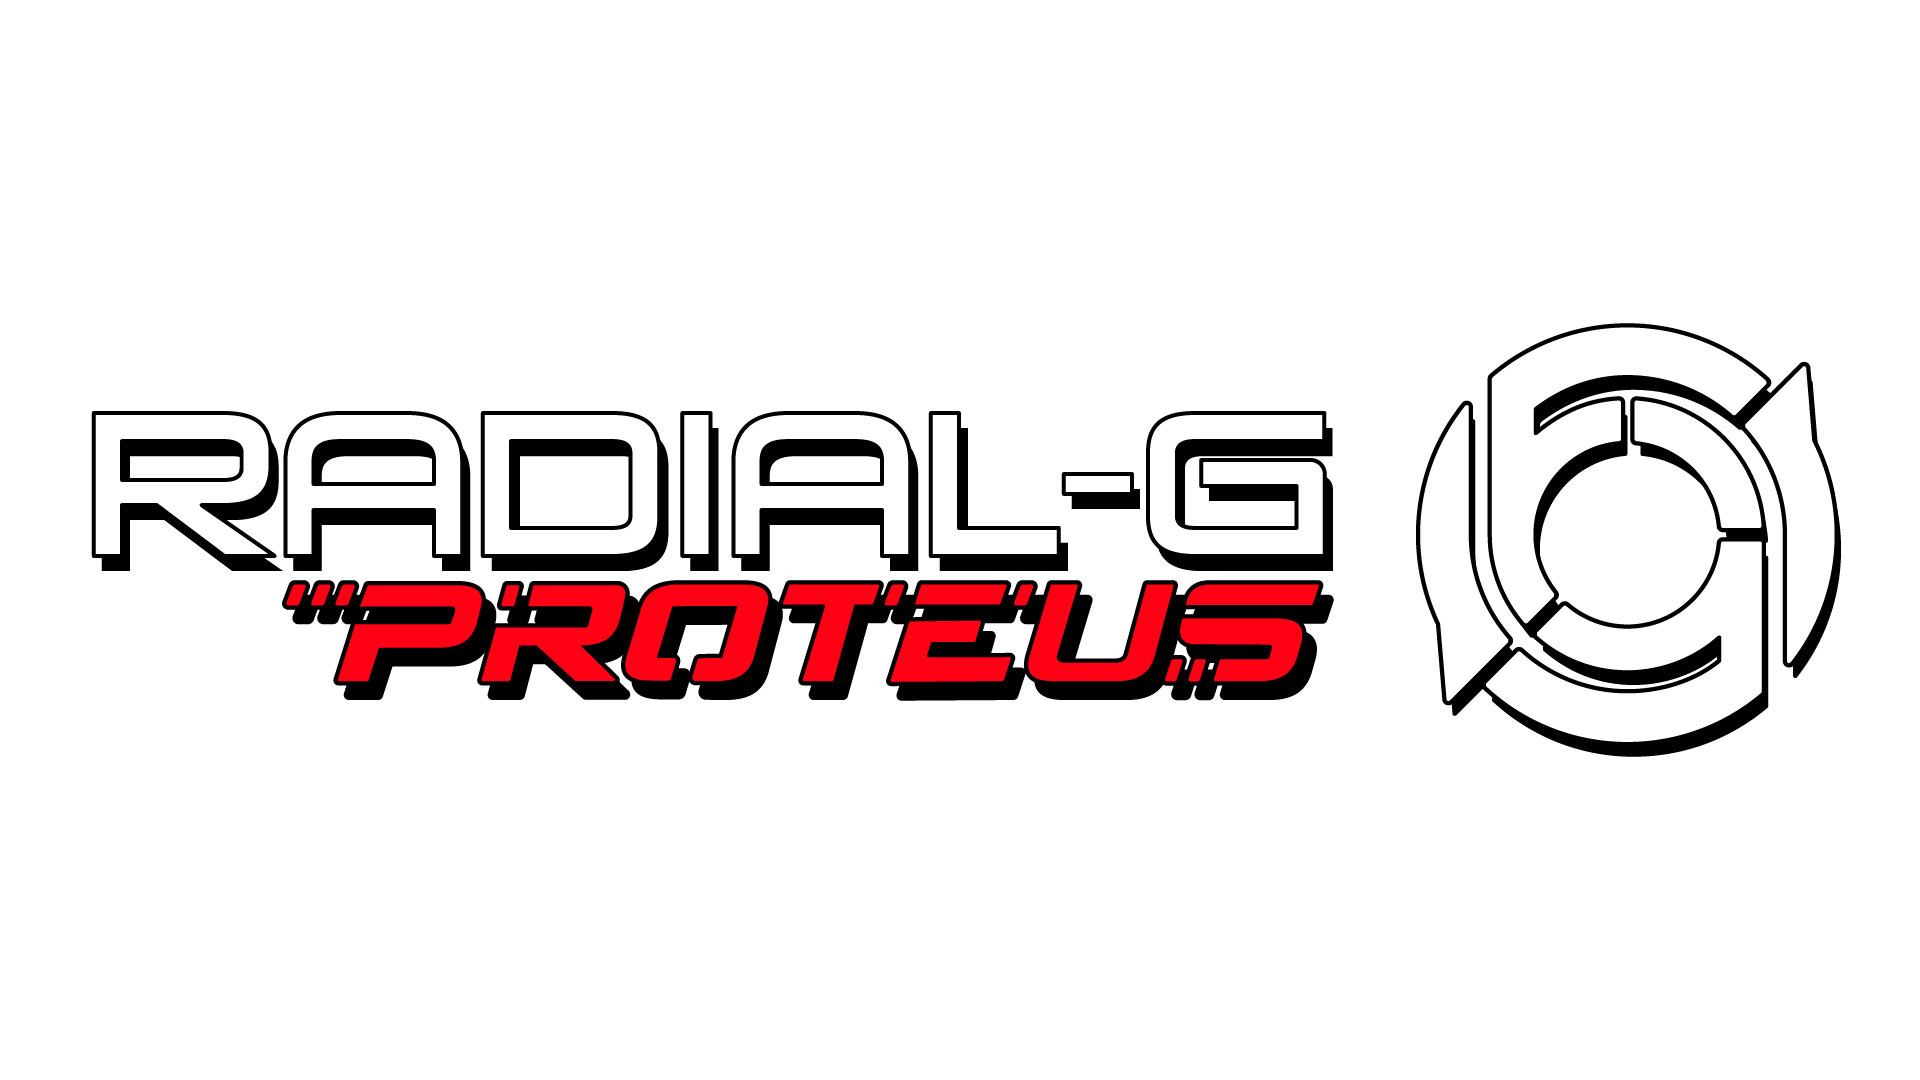 radial-g: Proteus logo